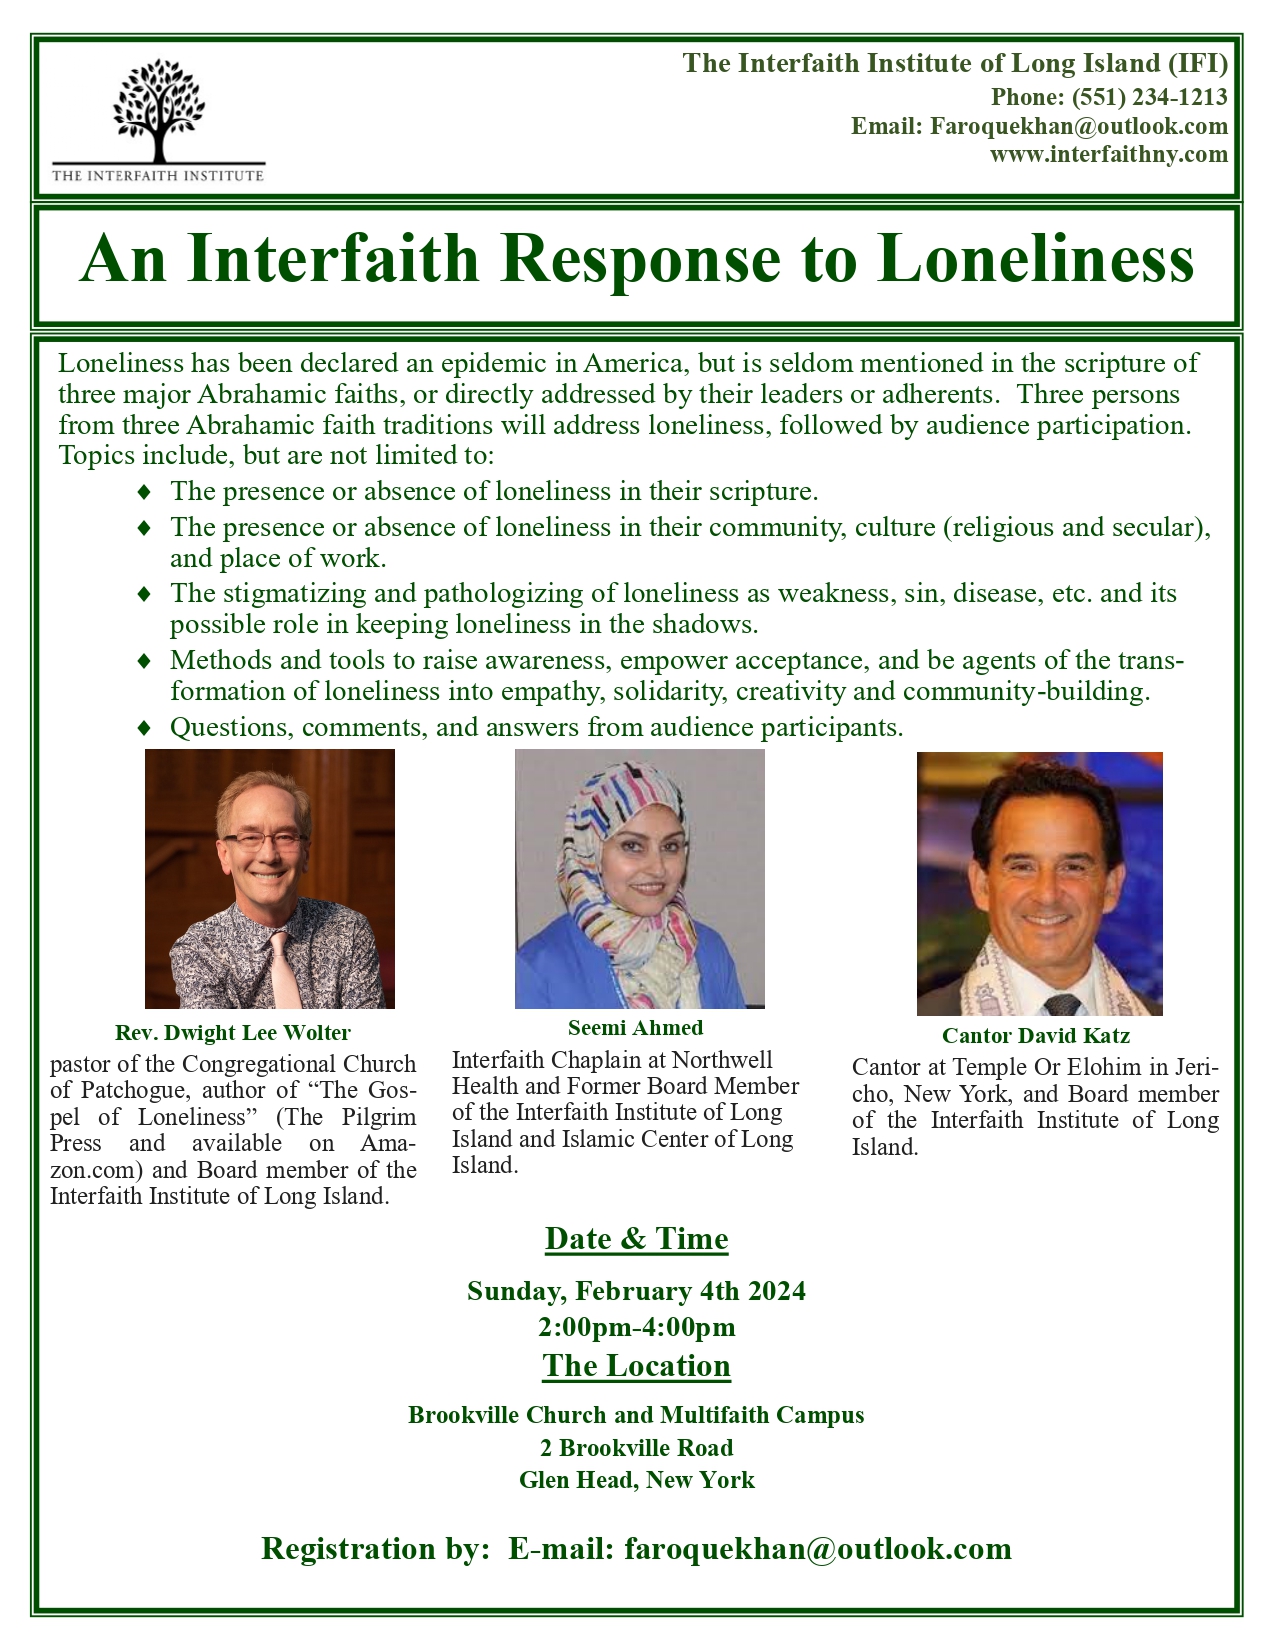 Interfaith Institute Image Events